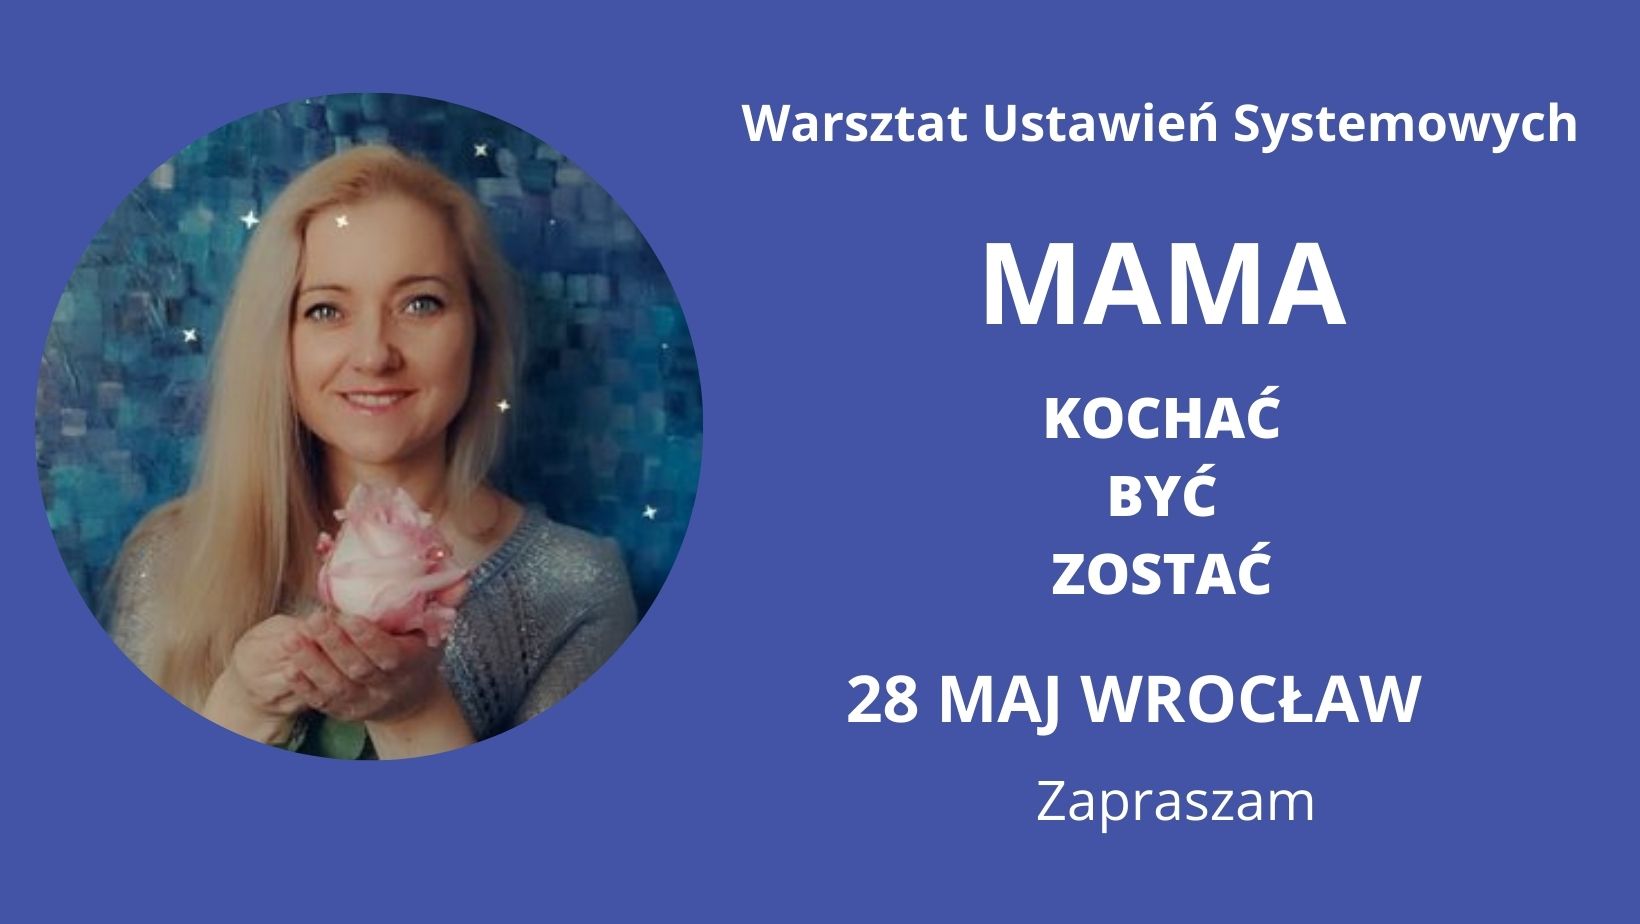 You are currently viewing 28 Maja Wrocław MAMA – kochać, być, zostać. Warsztat Ustawień Systemowych